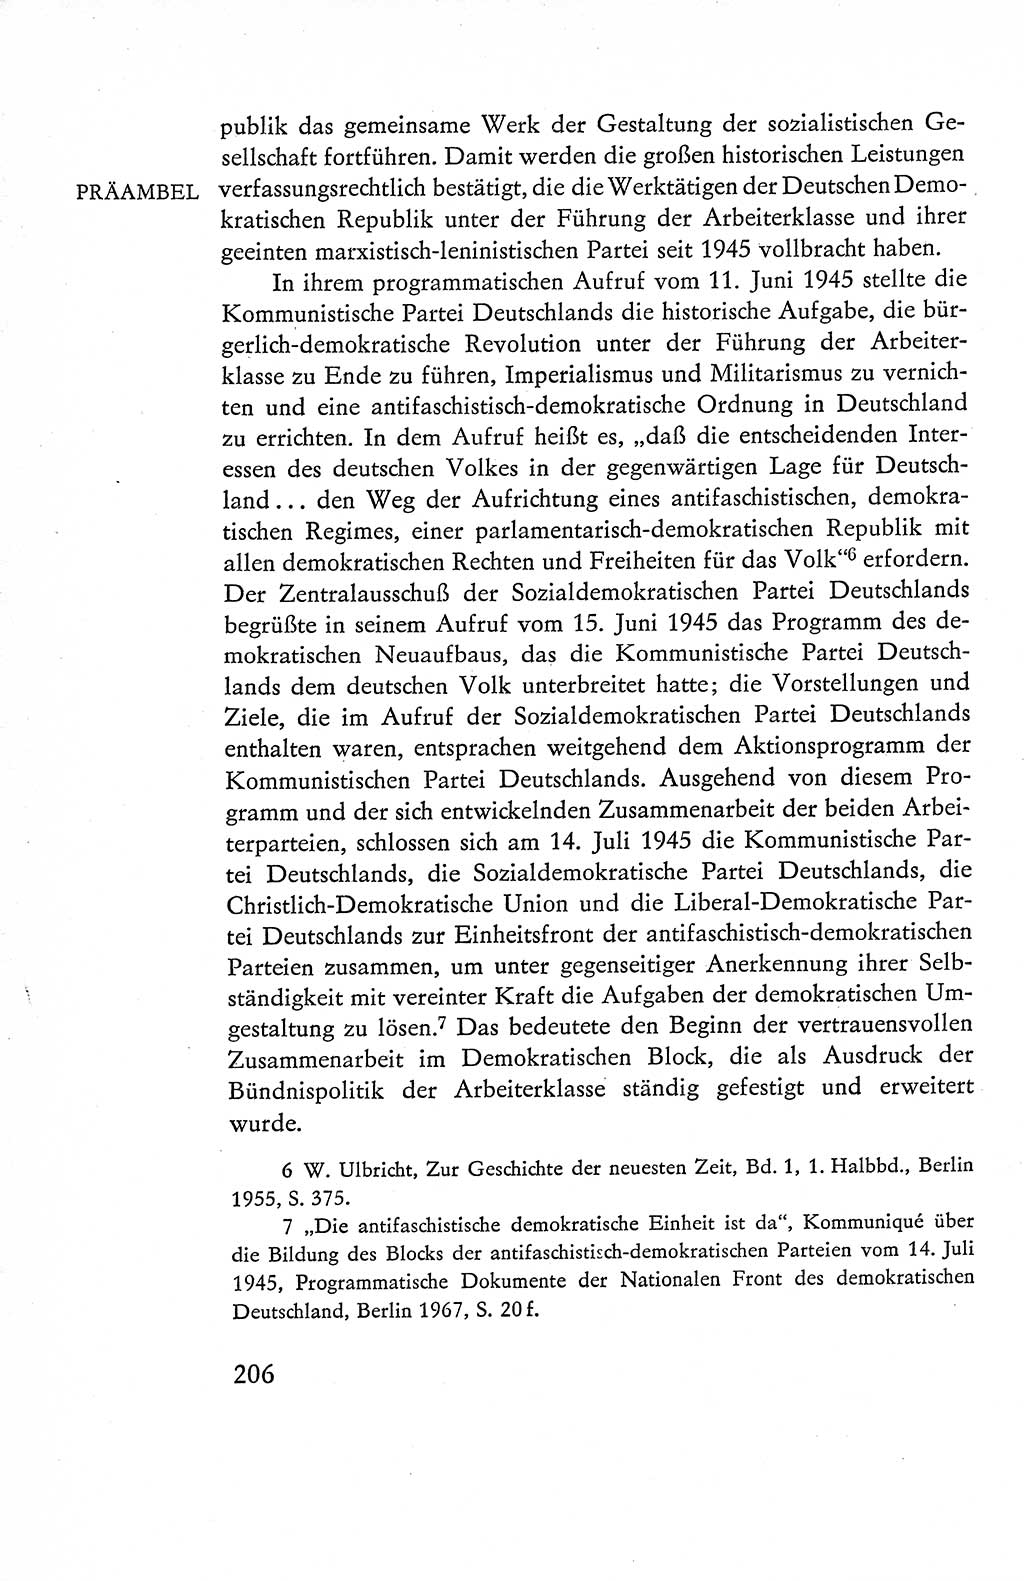 Verfassung der Deutschen Demokratischen Republik (DDR), Dokumente, Kommentar 1969, Band 1, Seite 206 (Verf. DDR Dok. Komm. 1969, Bd. 1, S. 206)